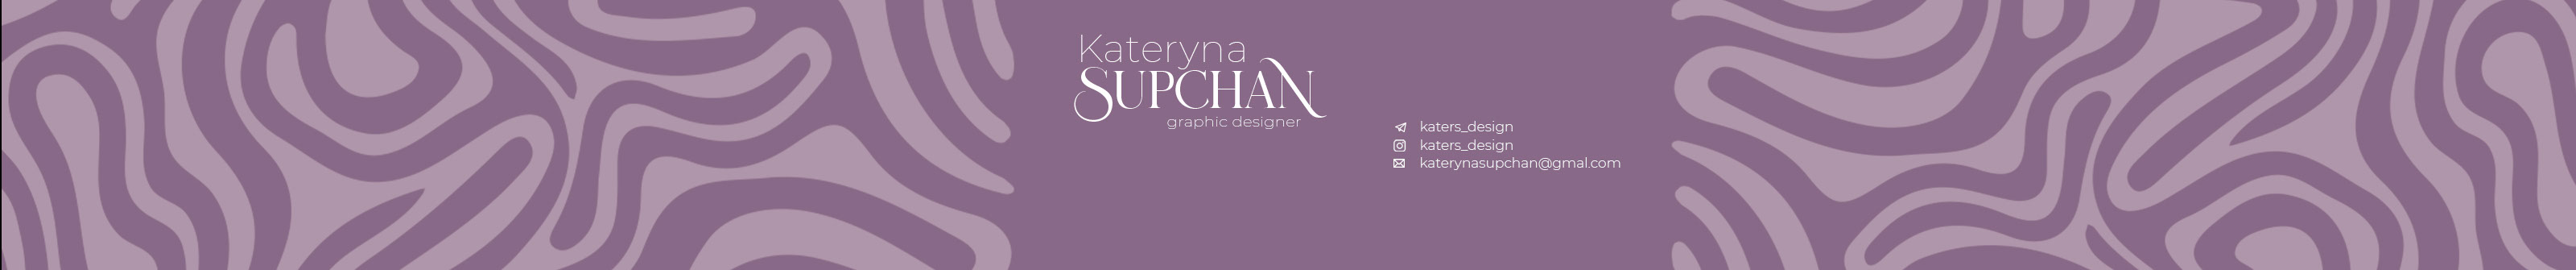 Banner profilu uživatele Kateryna Supchan